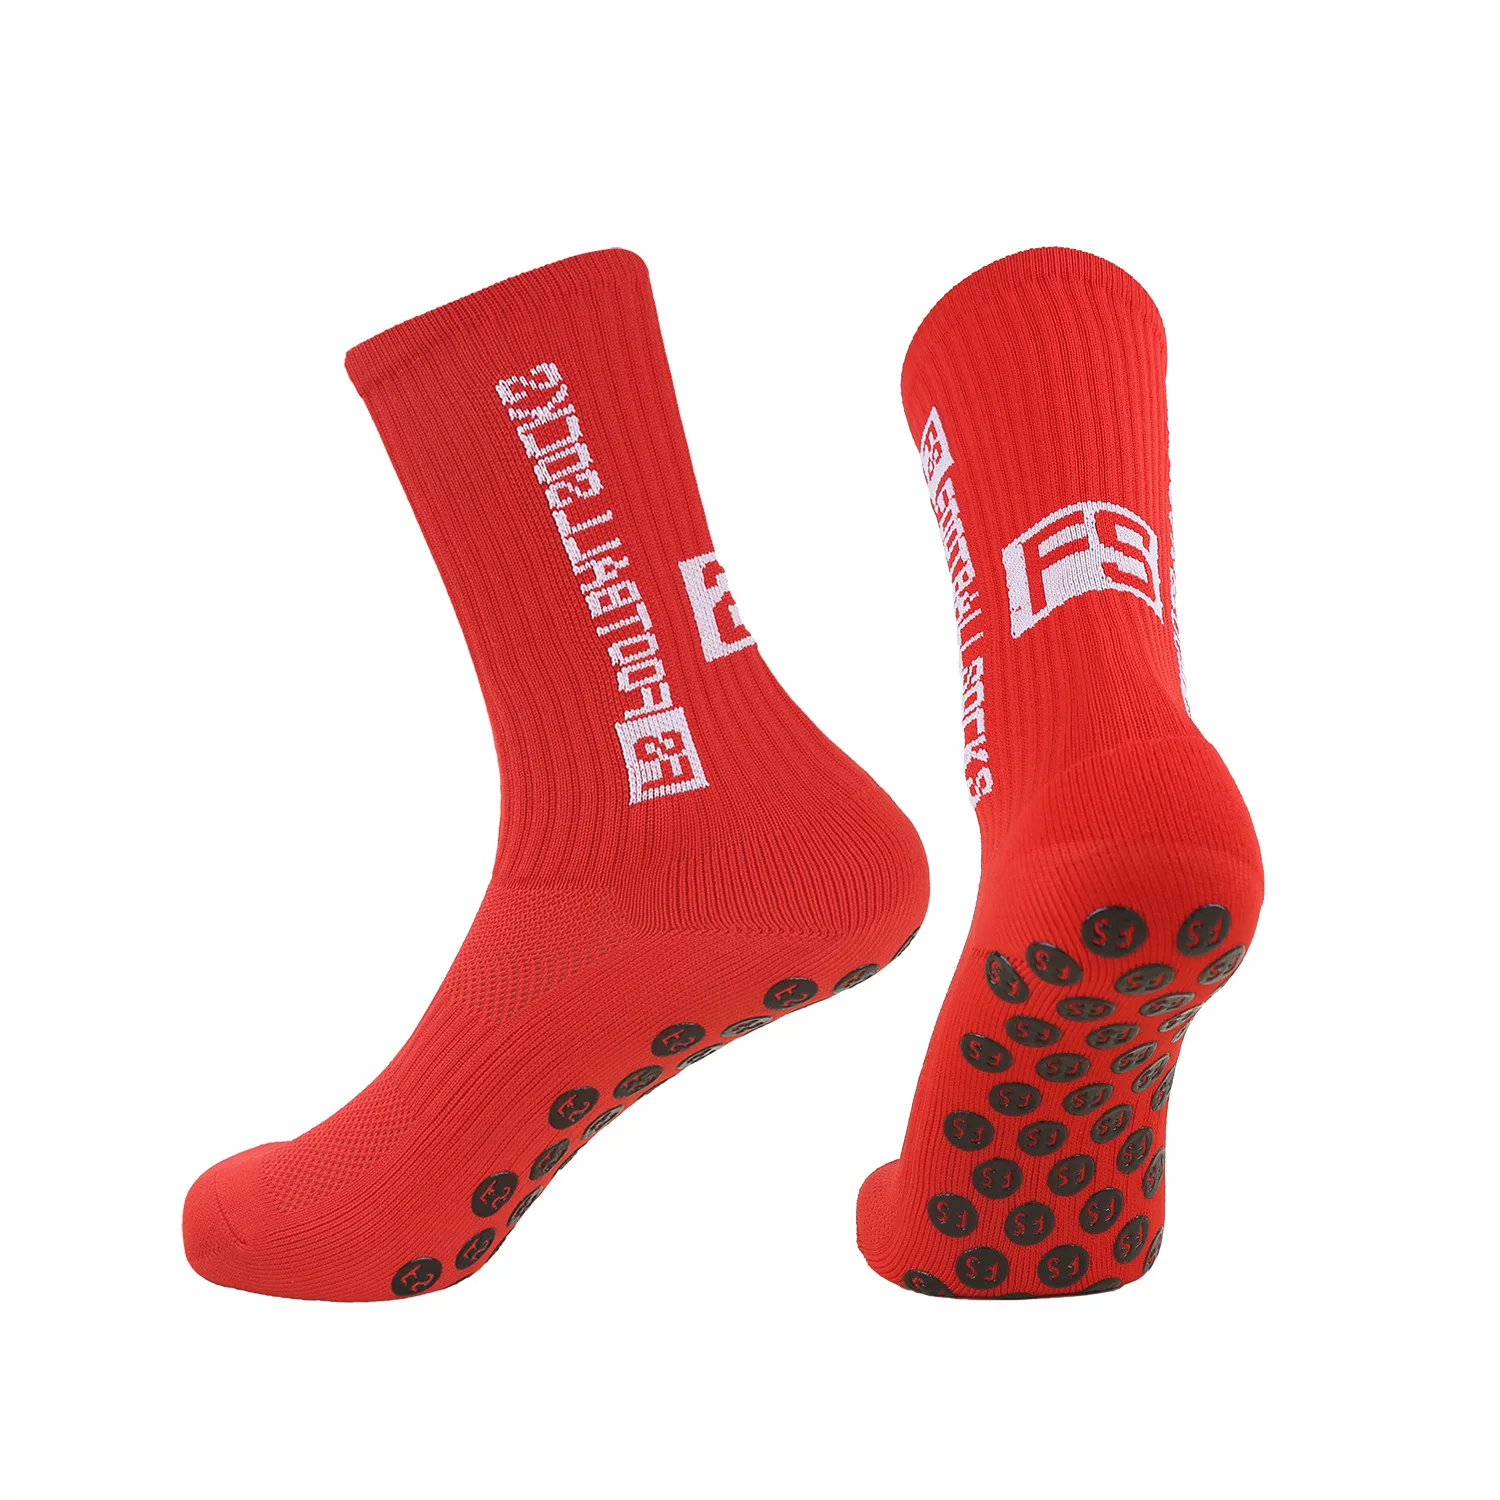 Football socks, men's mid length basketball socks, anti slip and wear-resistant sports socks, glue dispensing